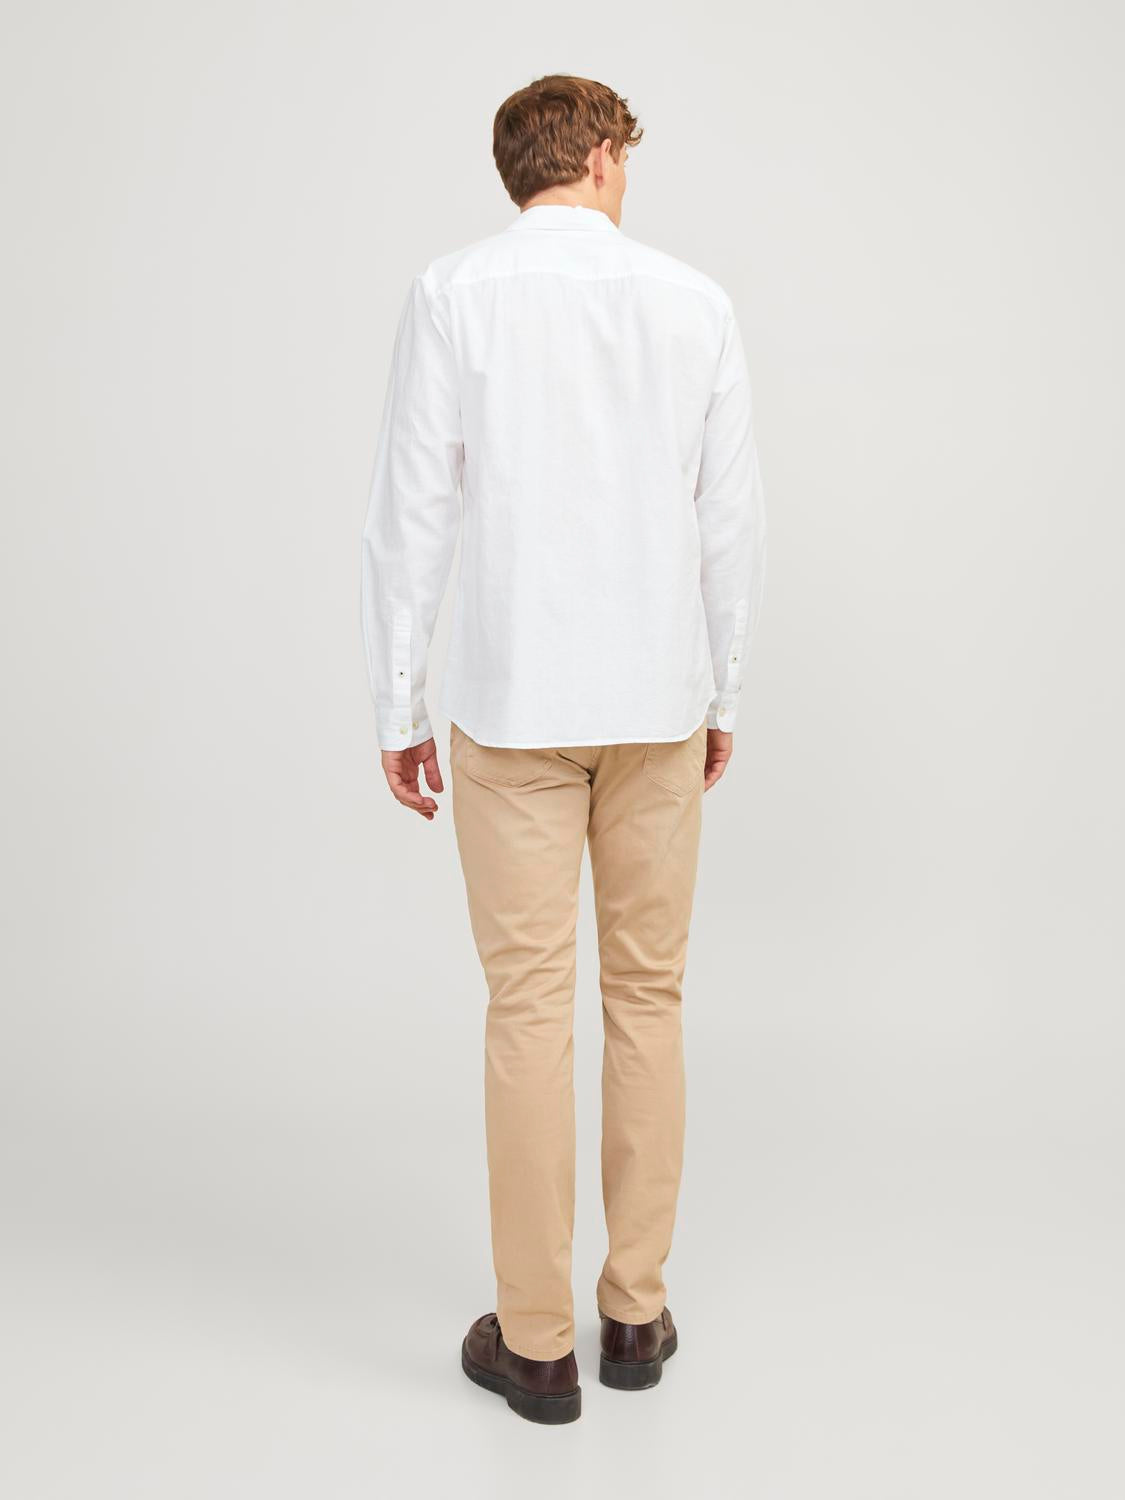 JJESUMMER Shirts - White